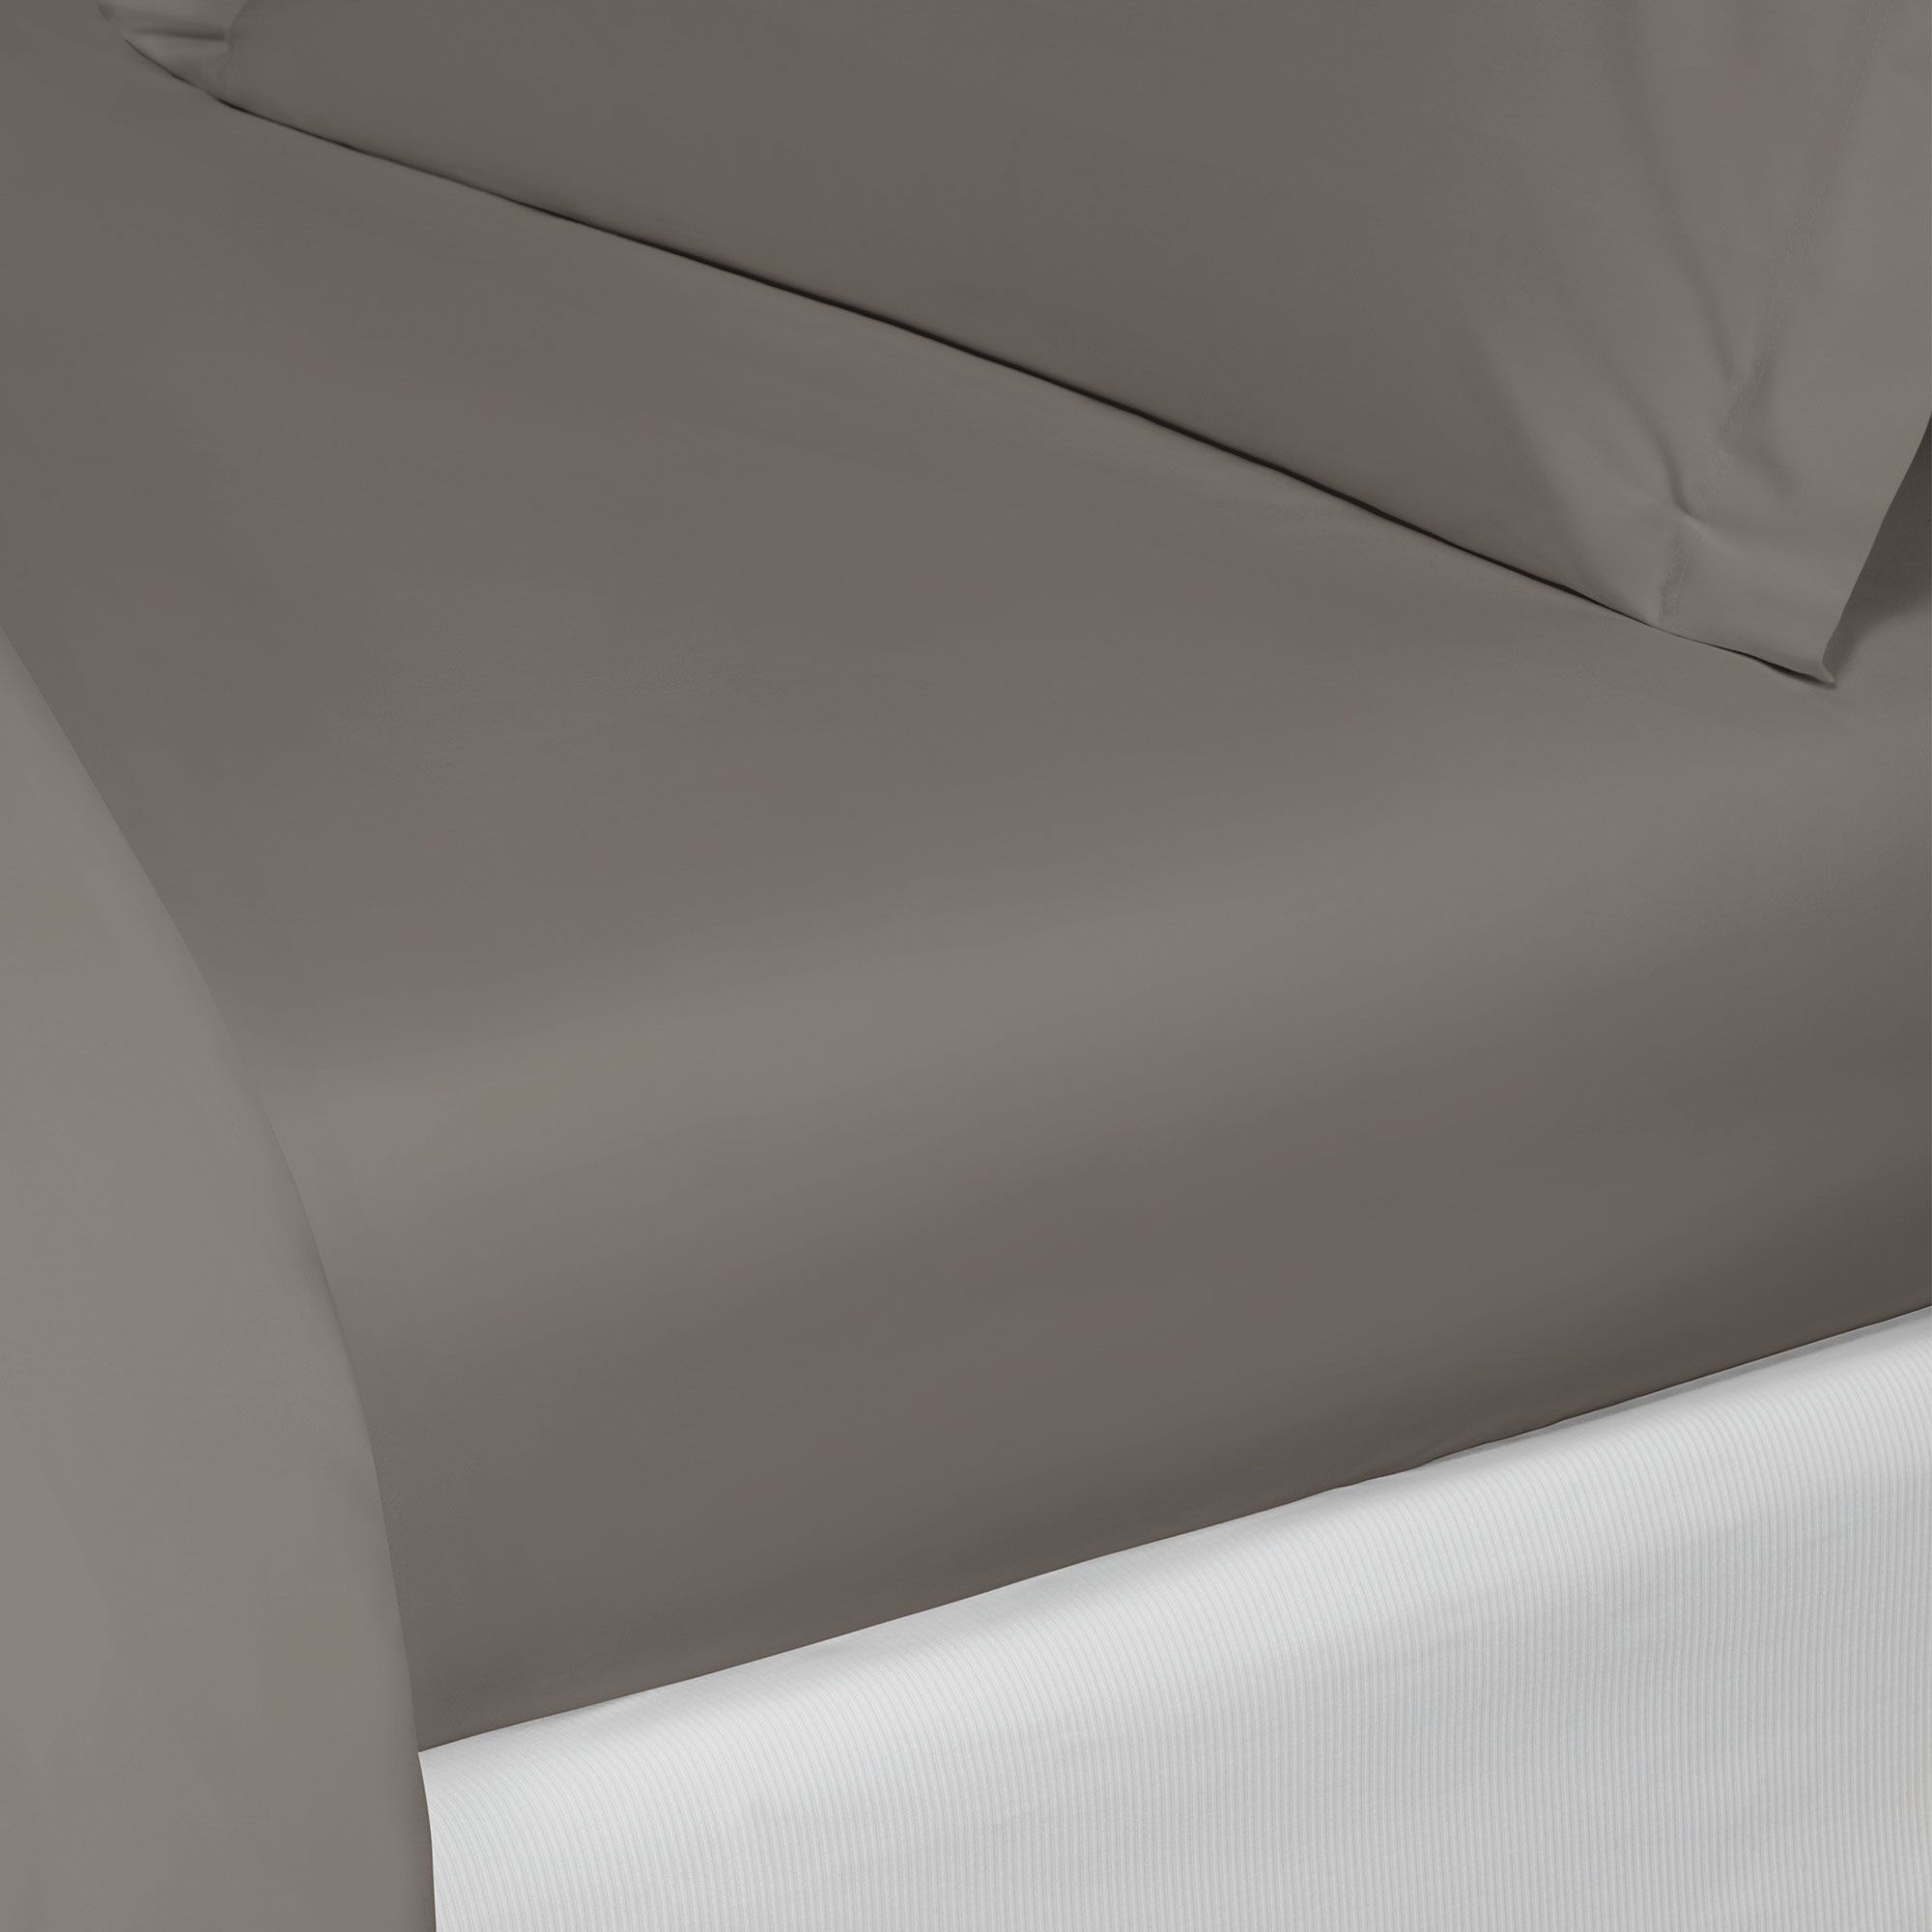 Простыня Togas Роял коричневая 180х220 см, цвет коричневый - фото 1